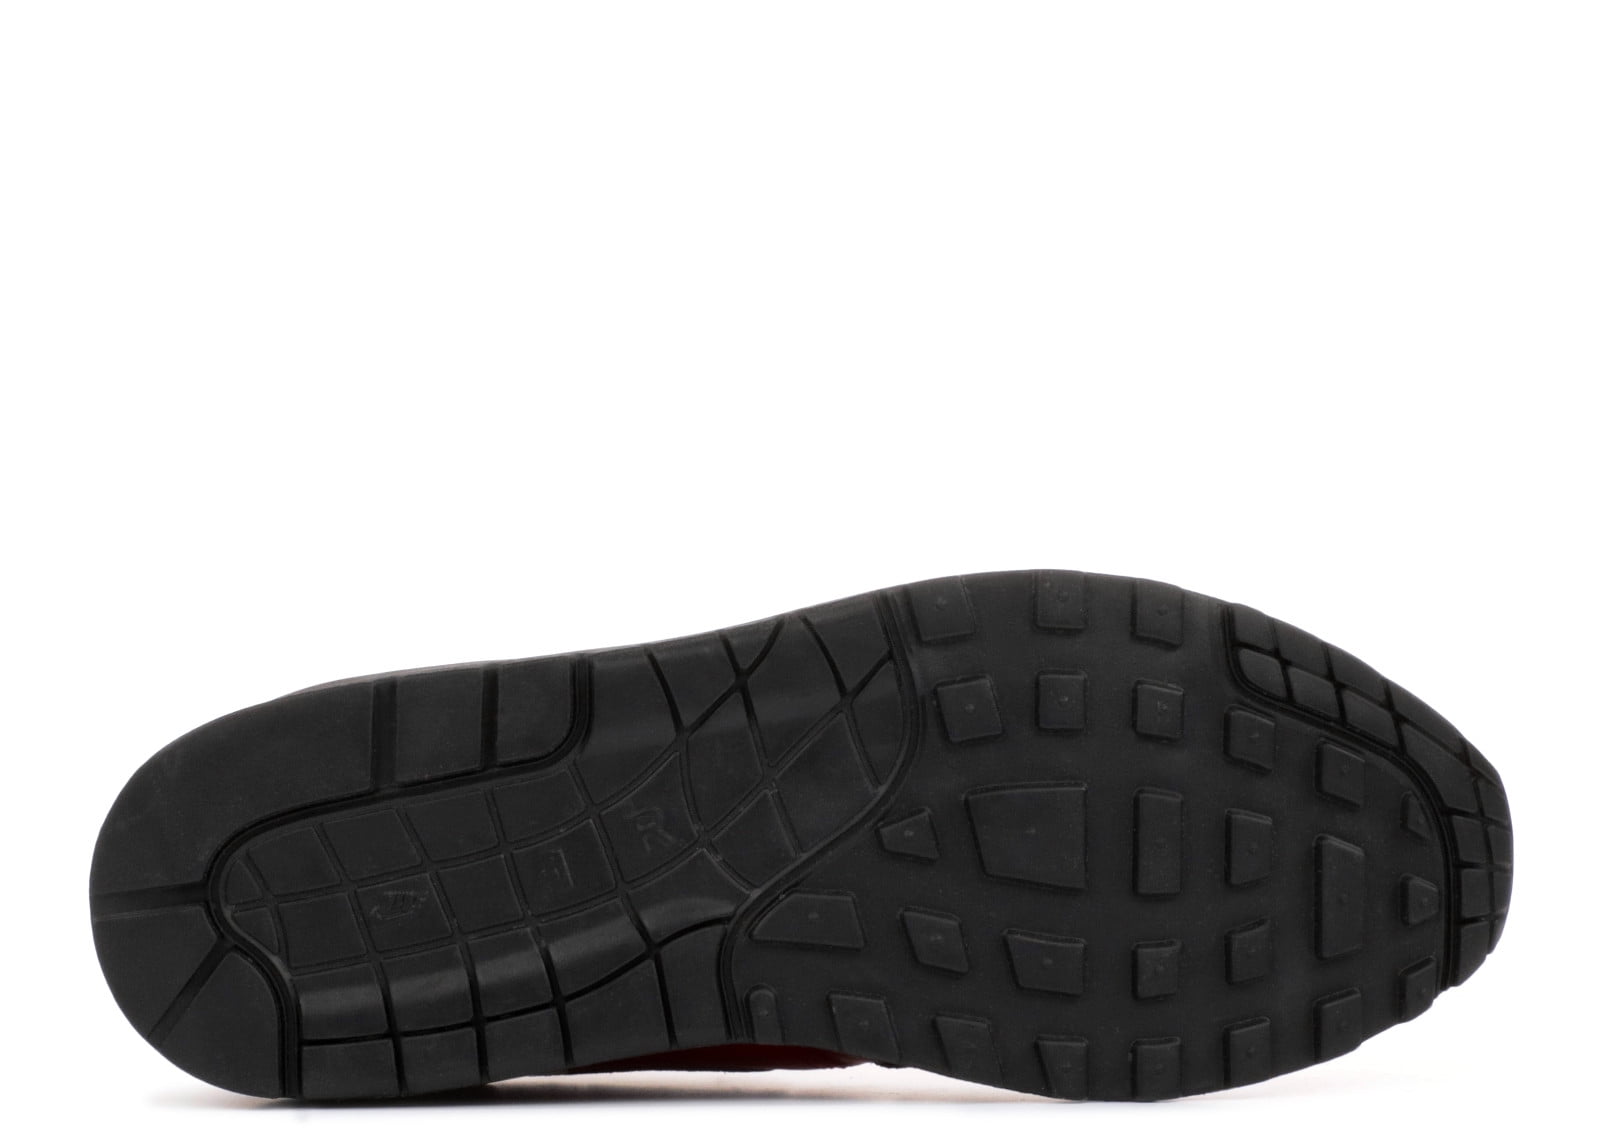 Oscurecer Marcha mala Paine Gillic Nike Air Max 1 LTR Premium Men's Shoes Gym Red/Black Rouge Gym/Noir  705282-600 - Walmart.com